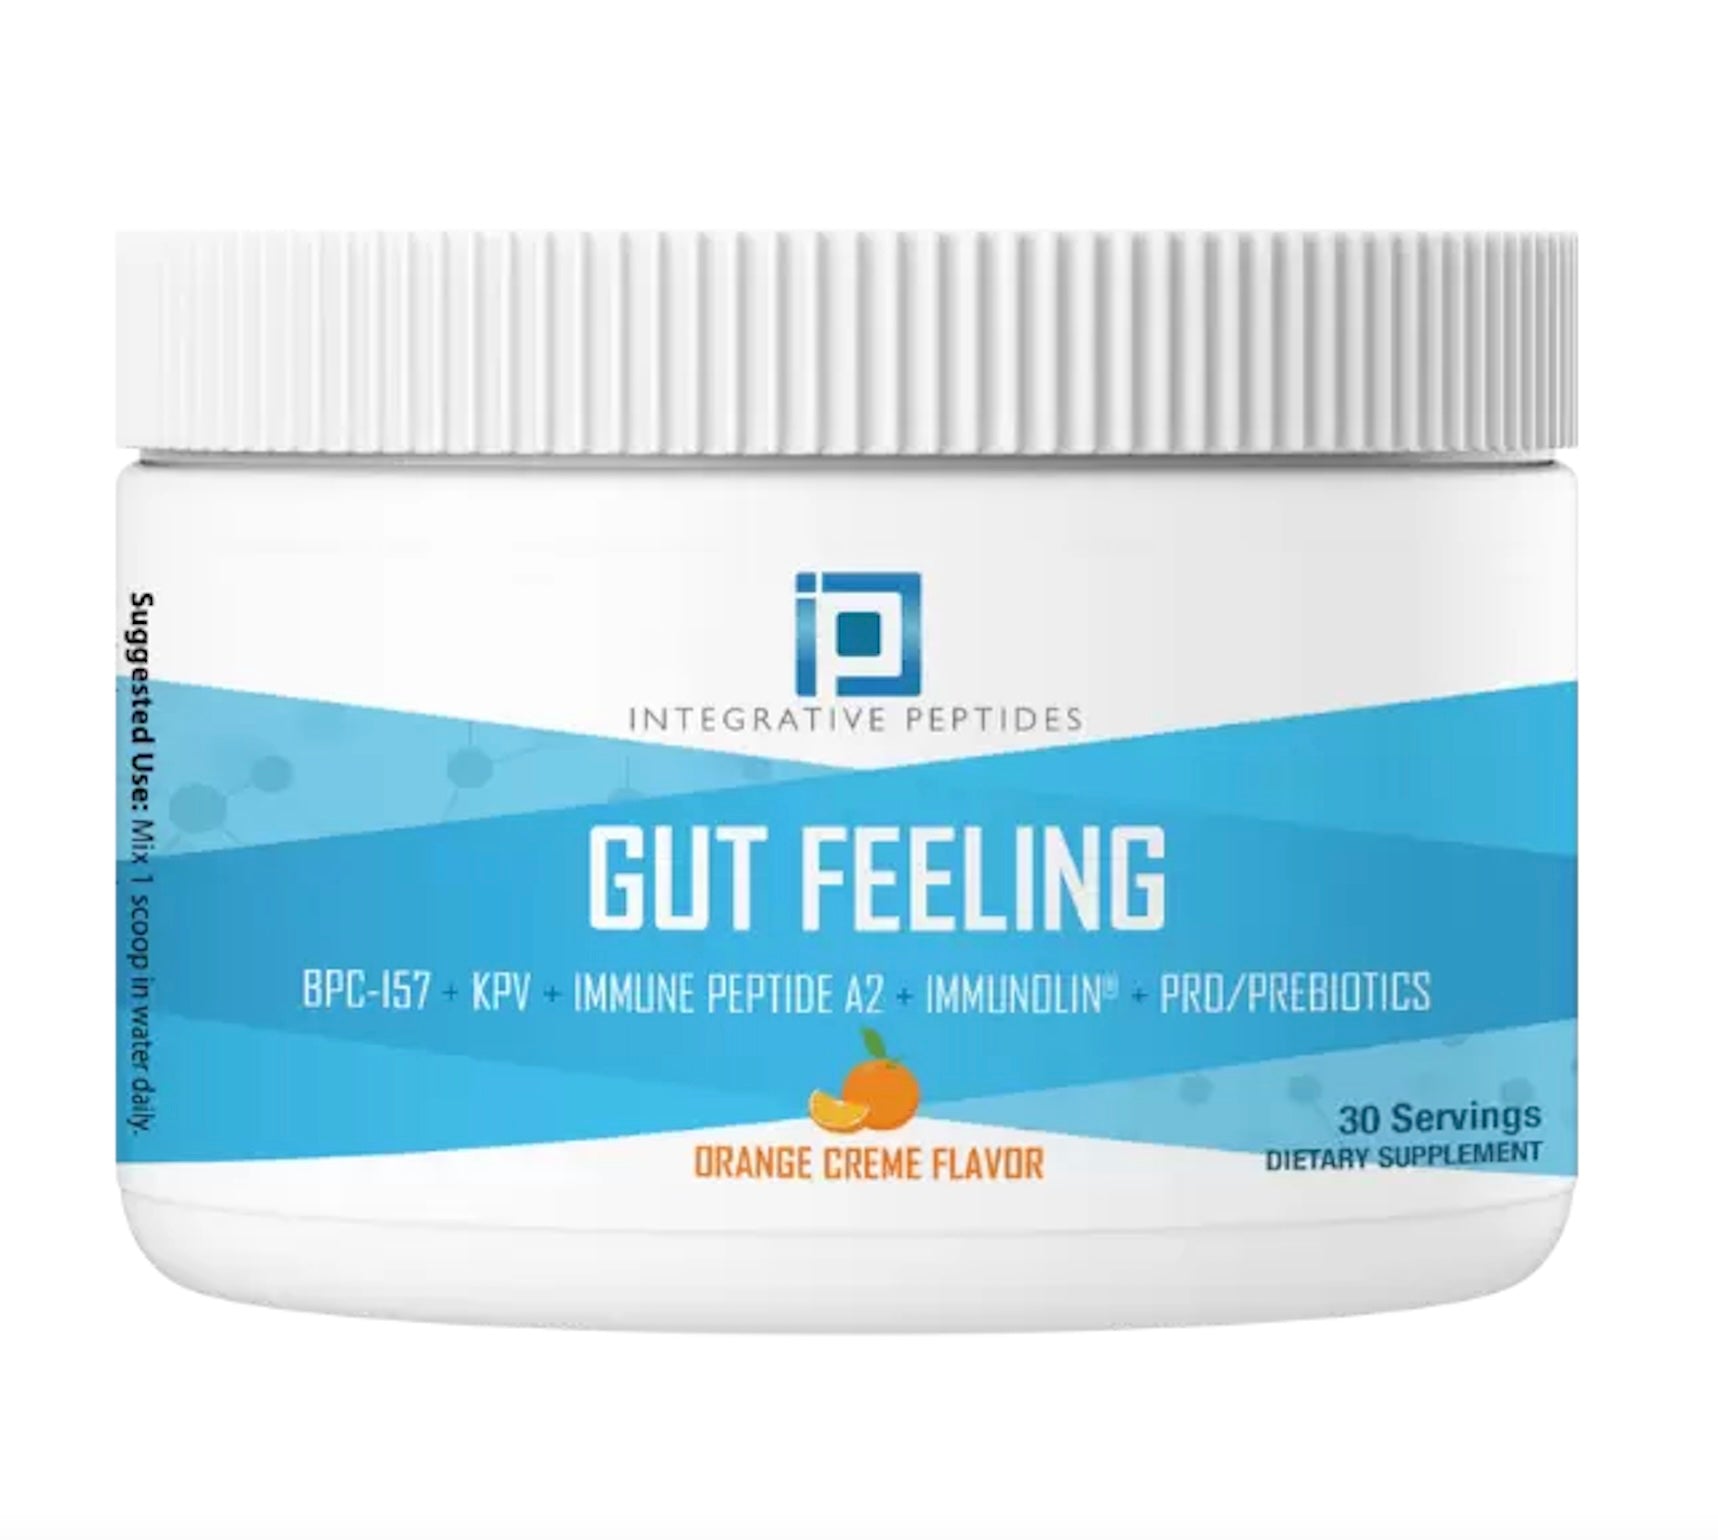 Integrative Peptides Gut Feeling - Orange Creme Flavor - 30 Servings